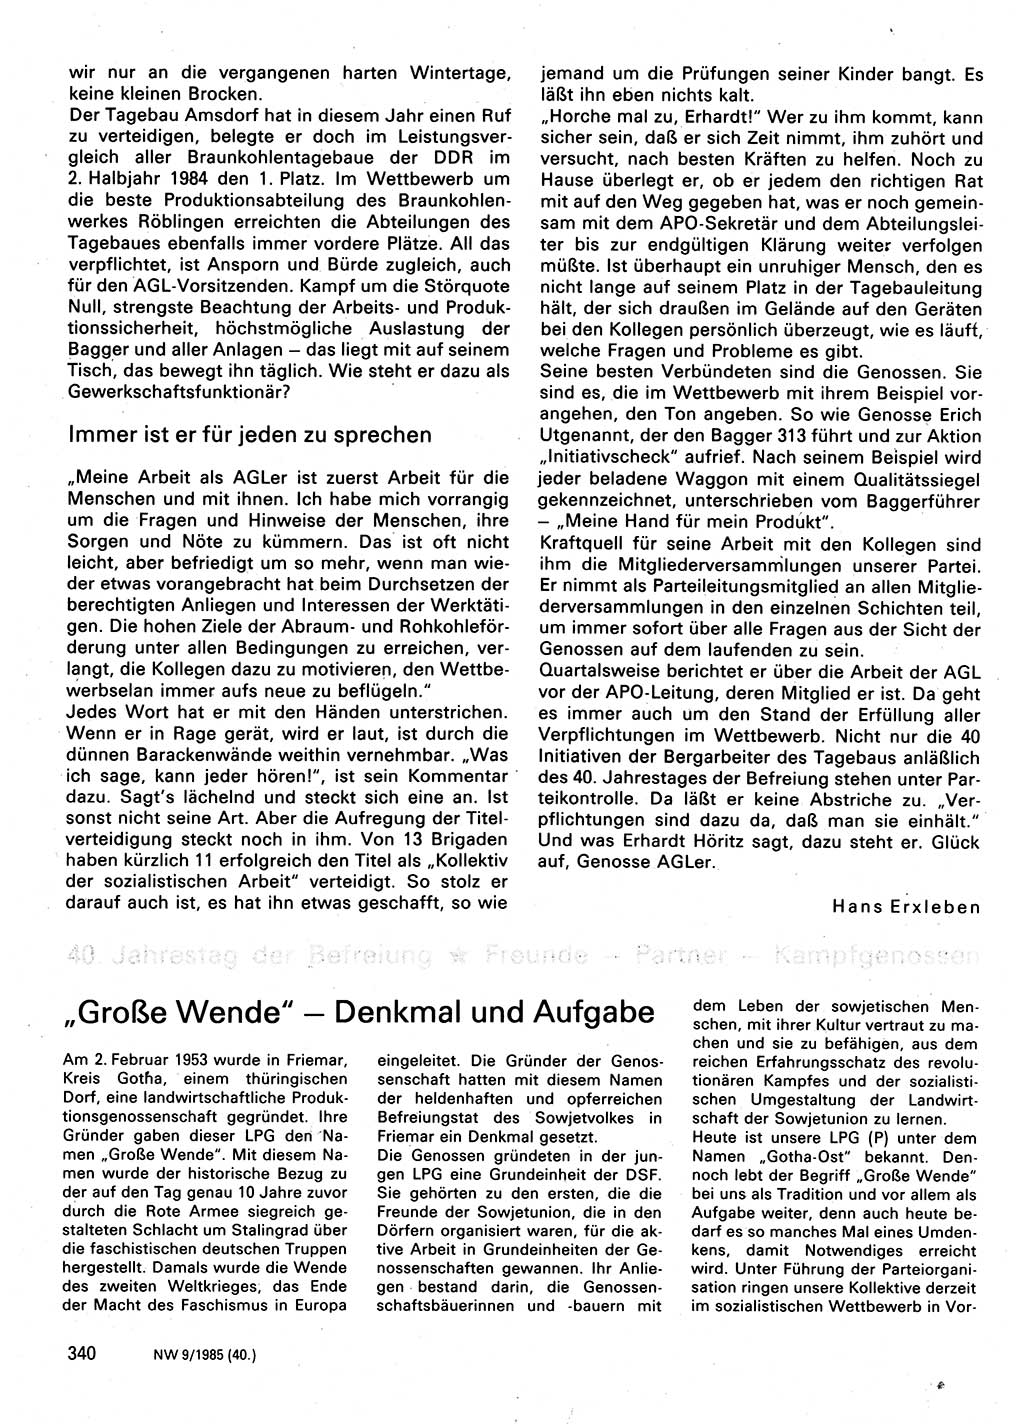 Neuer Weg (NW), Organ des Zentralkomitees (ZK) der SED (Sozialistische Einheitspartei Deutschlands) für Fragen des Parteilebens, 40. Jahrgang [Deutsche Demokratische Republik (DDR)] 1985, Seite 340 (NW ZK SED DDR 1985, S. 340)